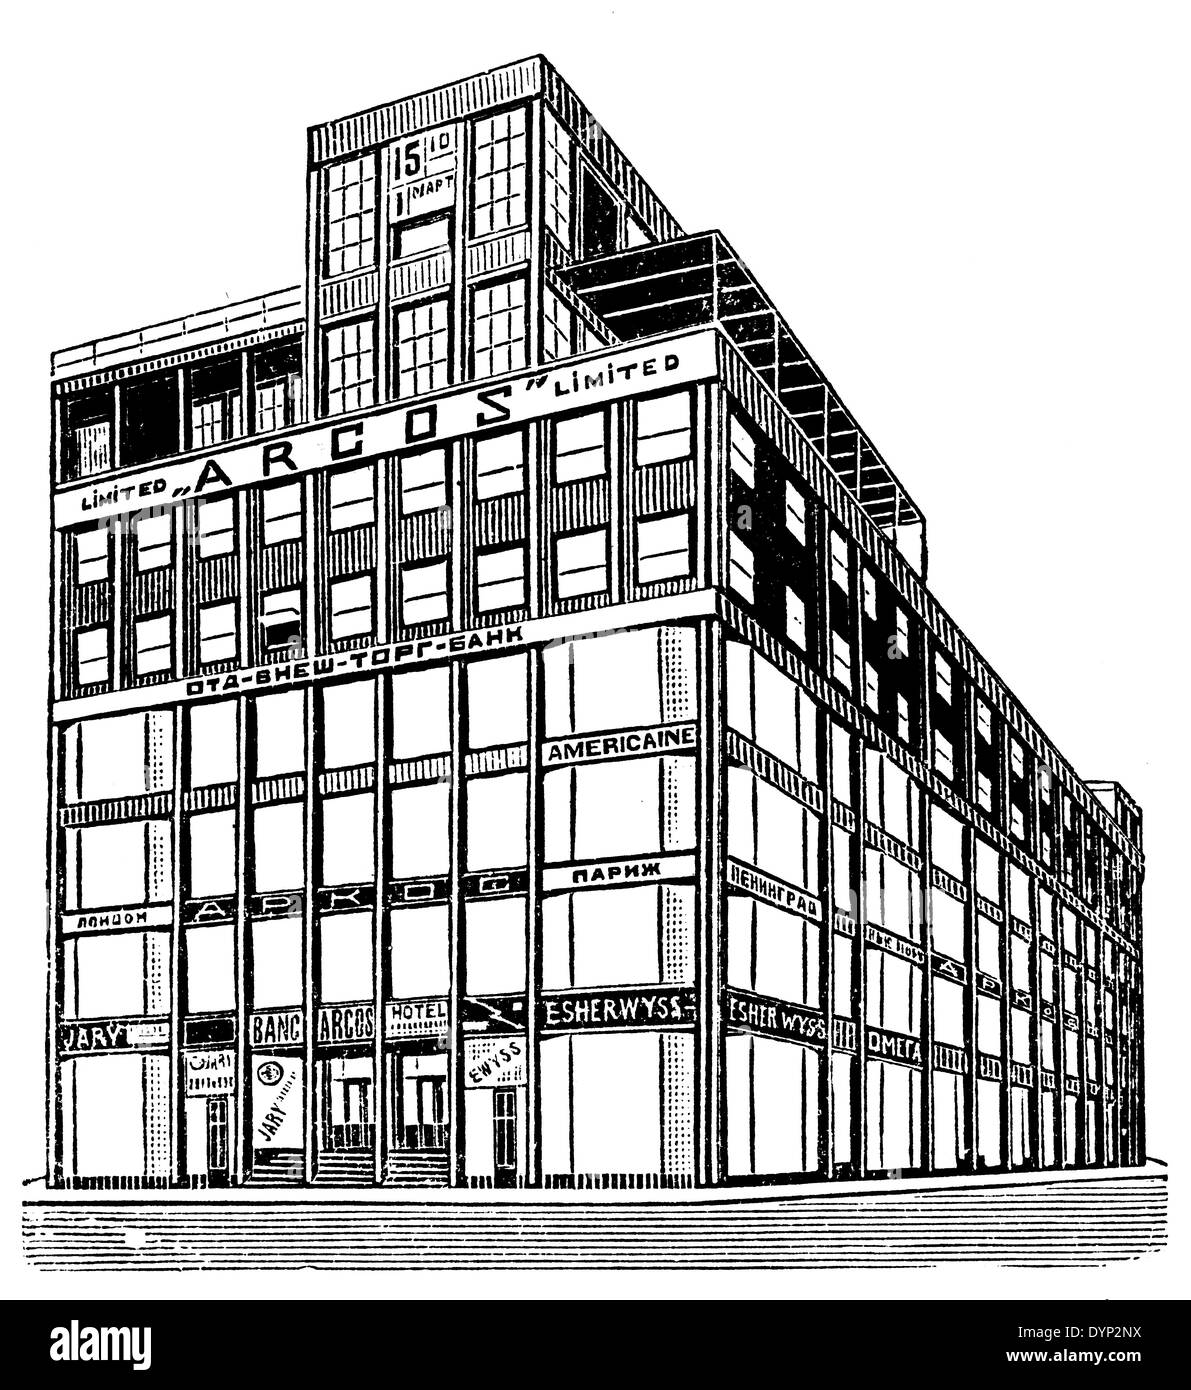 Projekt der Firma ARCOS Hauptquartier (1920er Jahre), Illustration aus sowjetischen Enzyklopädie, 1926 Stockfoto